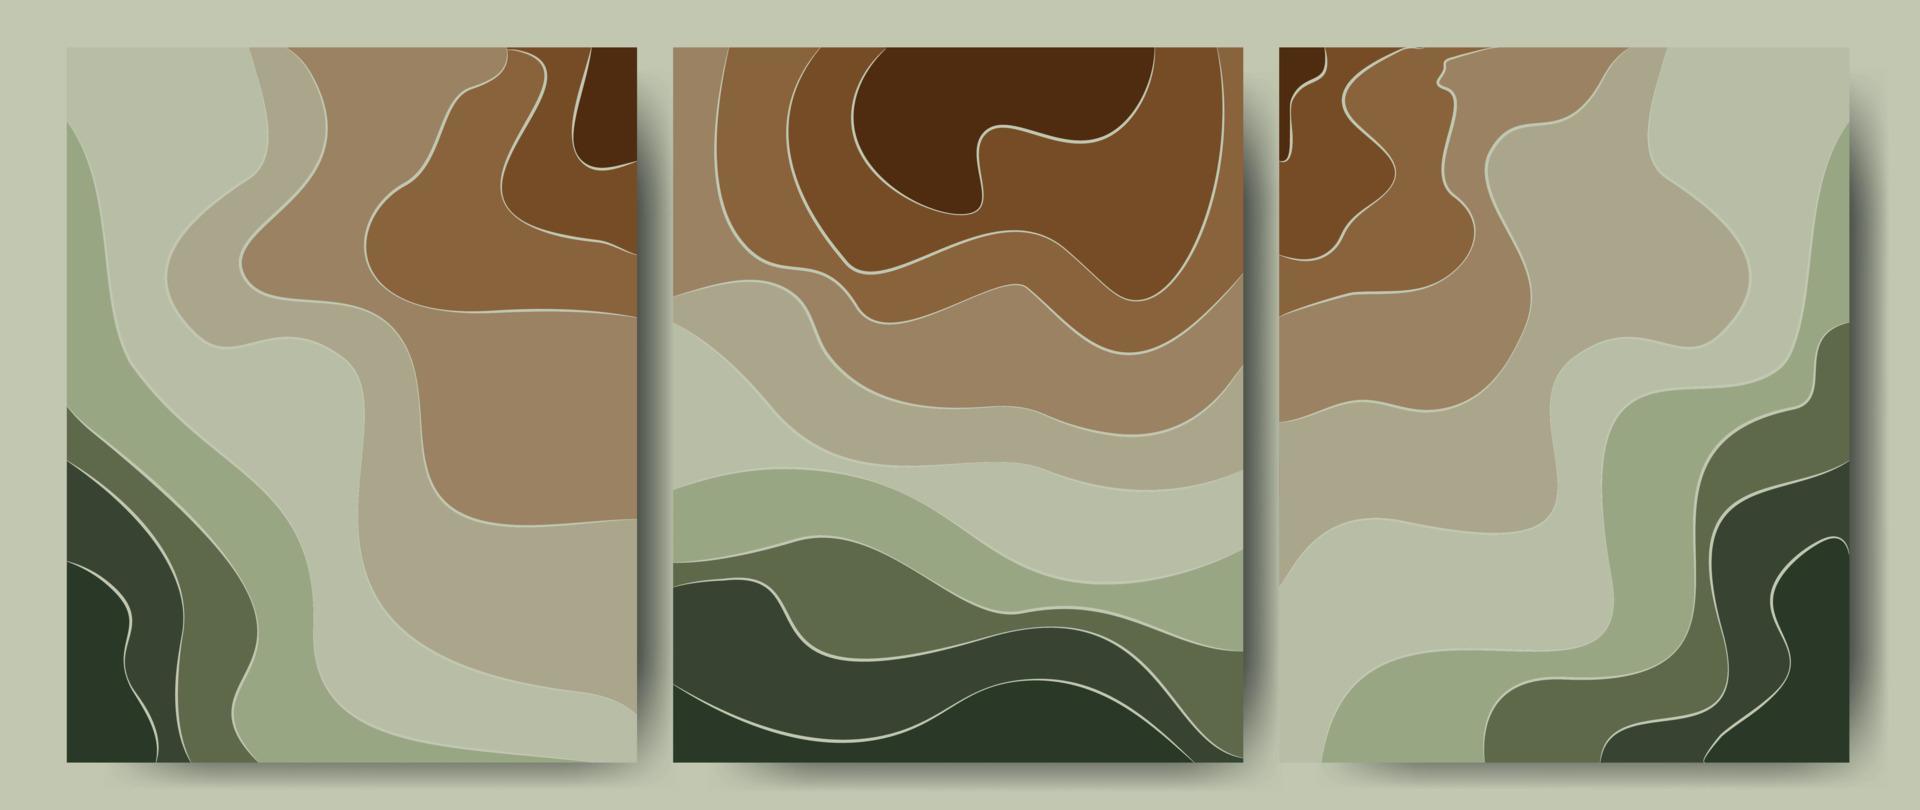 abstrakt bakgrund i grön-bruna färger, skog, jord. textur mall skog med ett mönster av vågiga linjer. perfekt för omslag, textiltryck, tapeter. vektor illustration.